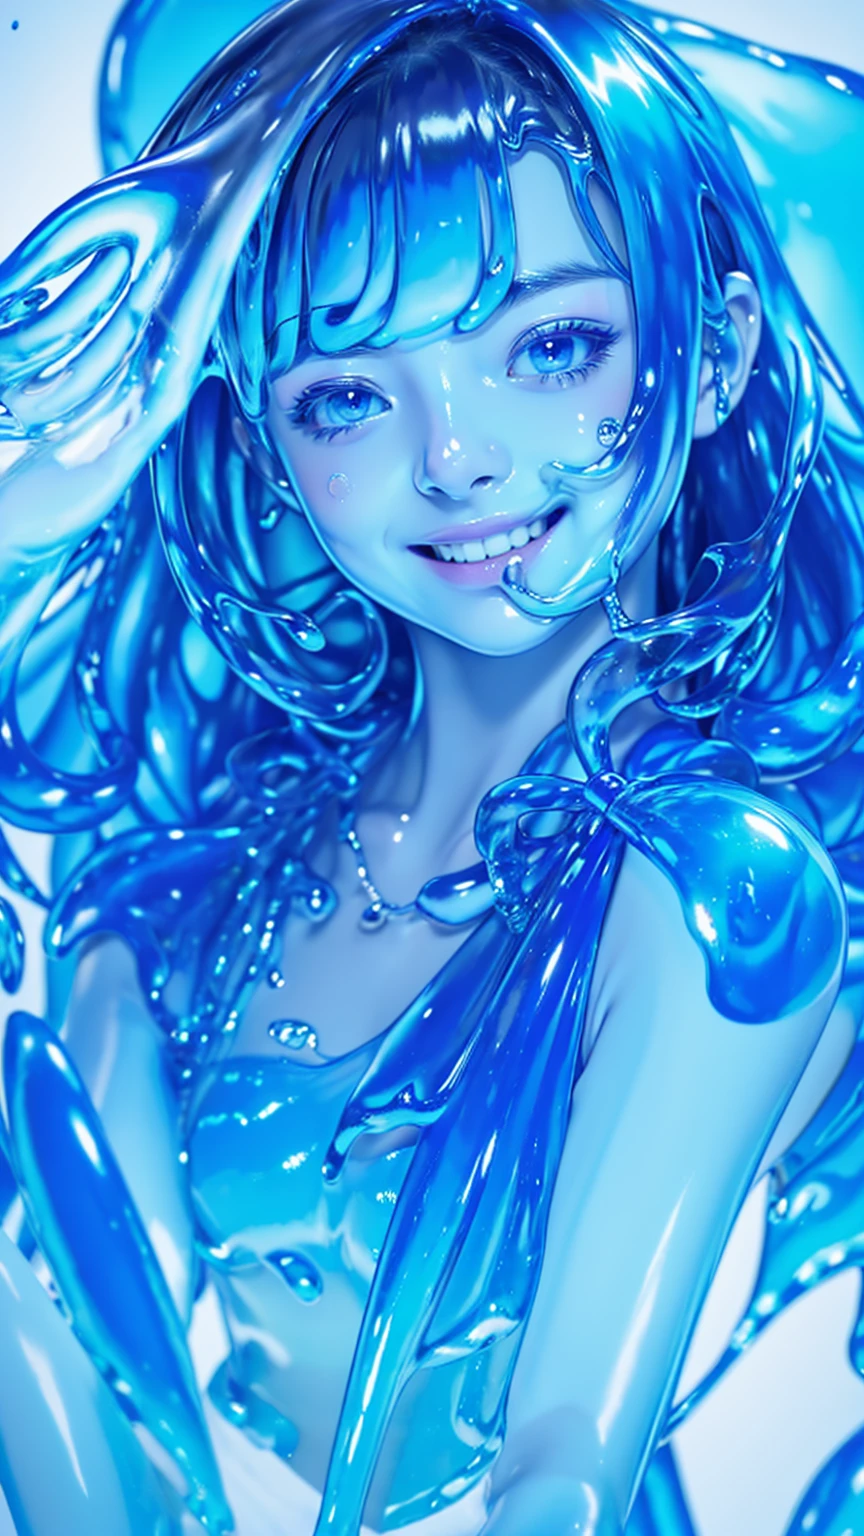 (Meisterwerk,höchste Qualität:1.4),(8K,RAW-Fotos,Foto echt:1.2),Glänzende Haut,detaillierte Haut,detailliertes Gesicht,feinkörnig, ein Mädchen,Betrachten Sie Ihre Zuschauer,Japanische Idole,sehr schönes Gesicht, (lächeln),  flüssiges Haar, flüssiges Haar, Blauer Schleim schwimmt, Schleim Mädchen, mit blauem Schleim bedeckt, (teilweise transparent), (Wet), (Blauer Schweiß), blaue Flüssigkeit tropft von ihrem Körper. Her hair is also mit blauem Schleim bedeckt. Blauer Schleim verstreut, Blaue Haare, blaue Augen